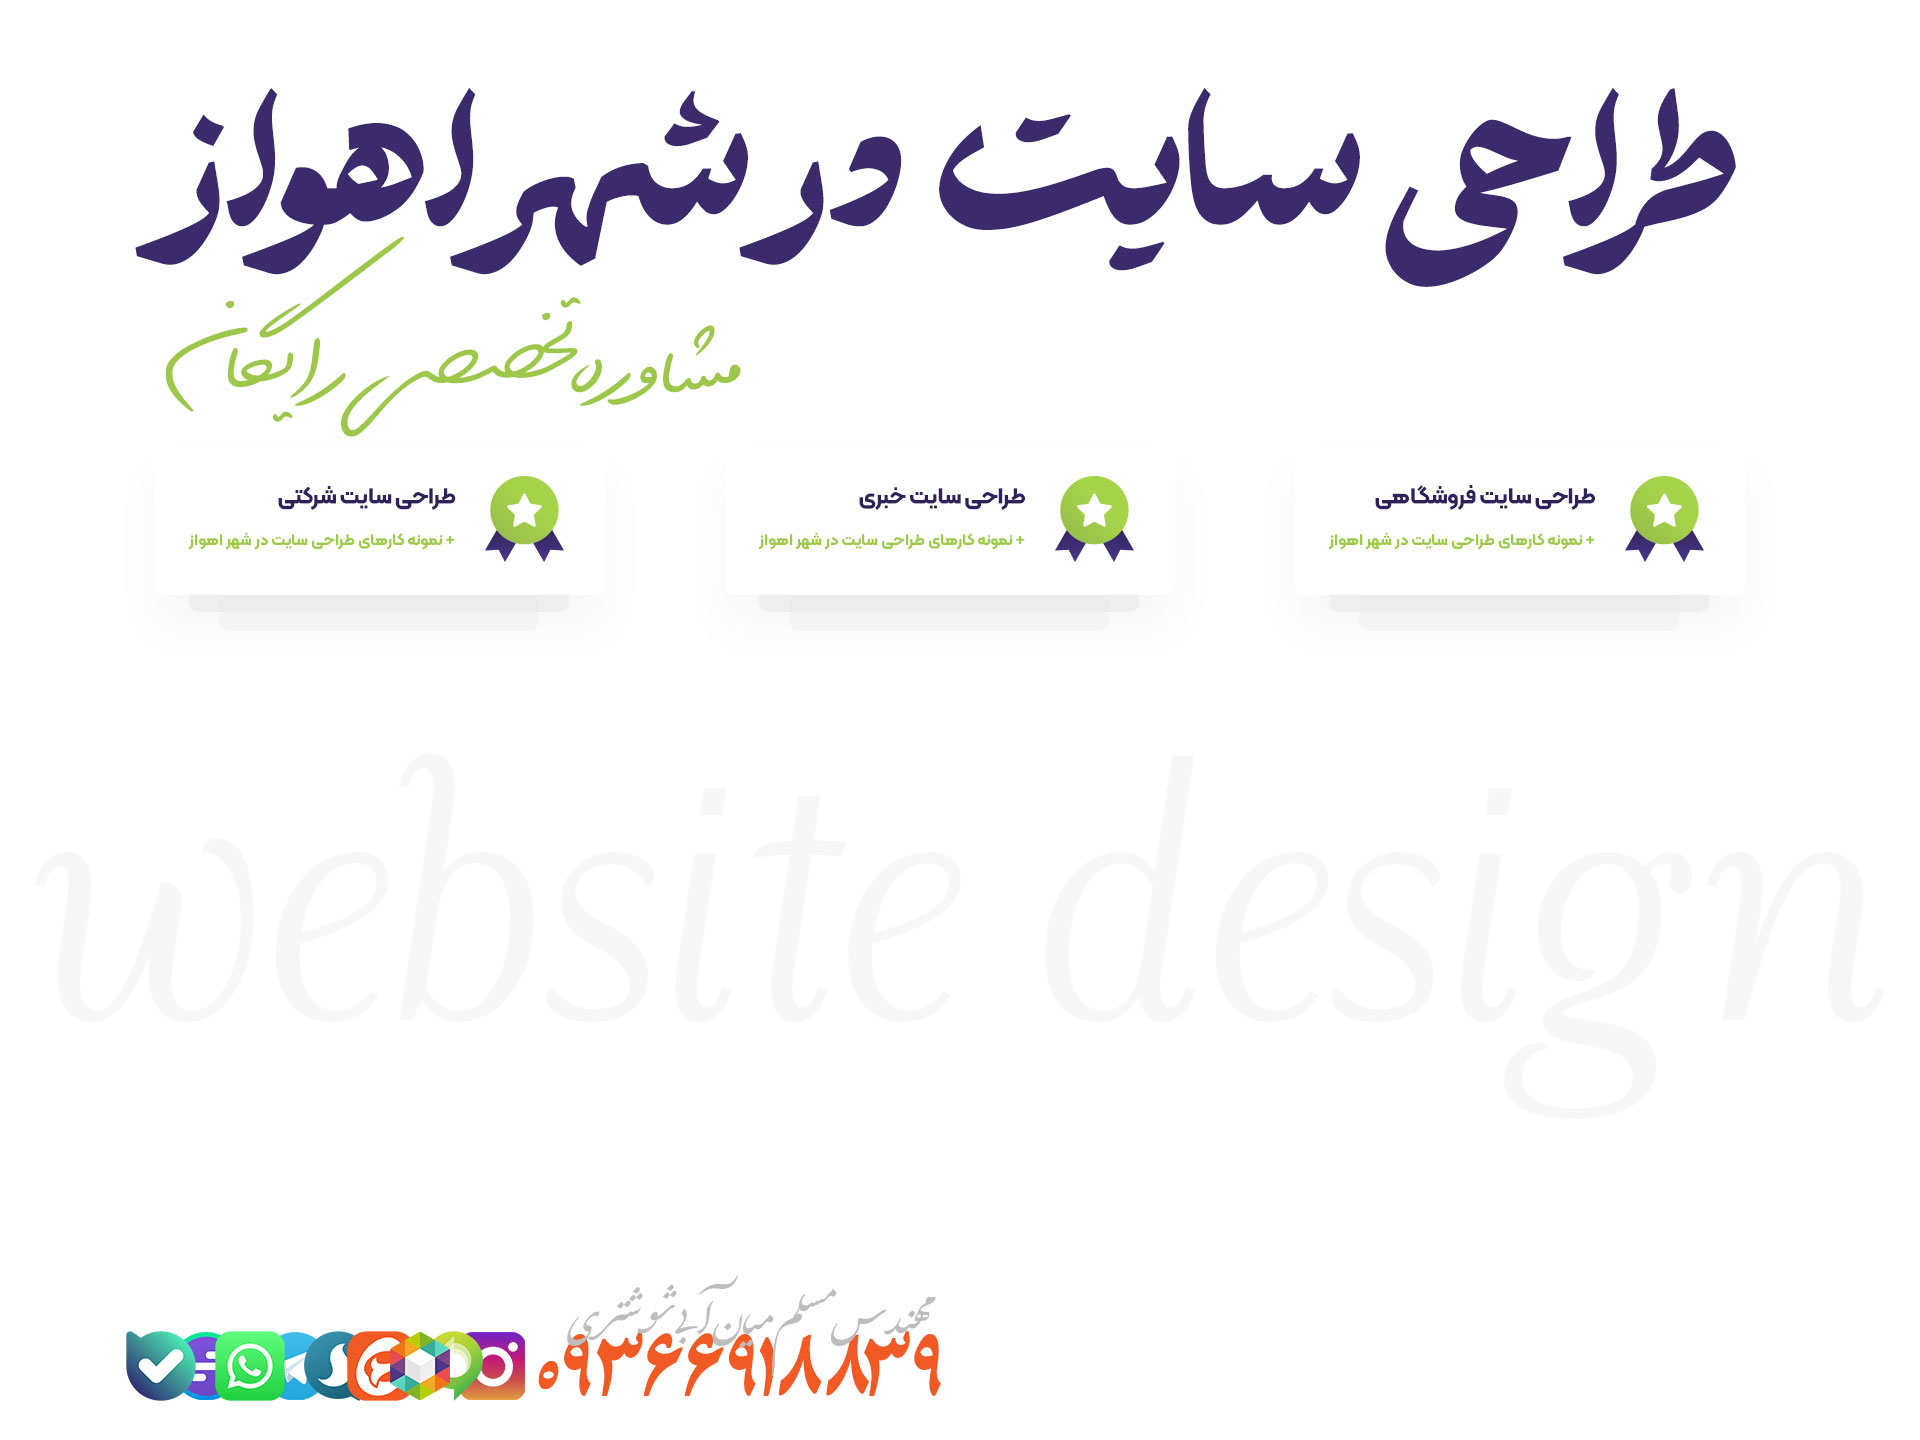 طراحی سایت در شهر اهواز + مشاوره رایگان